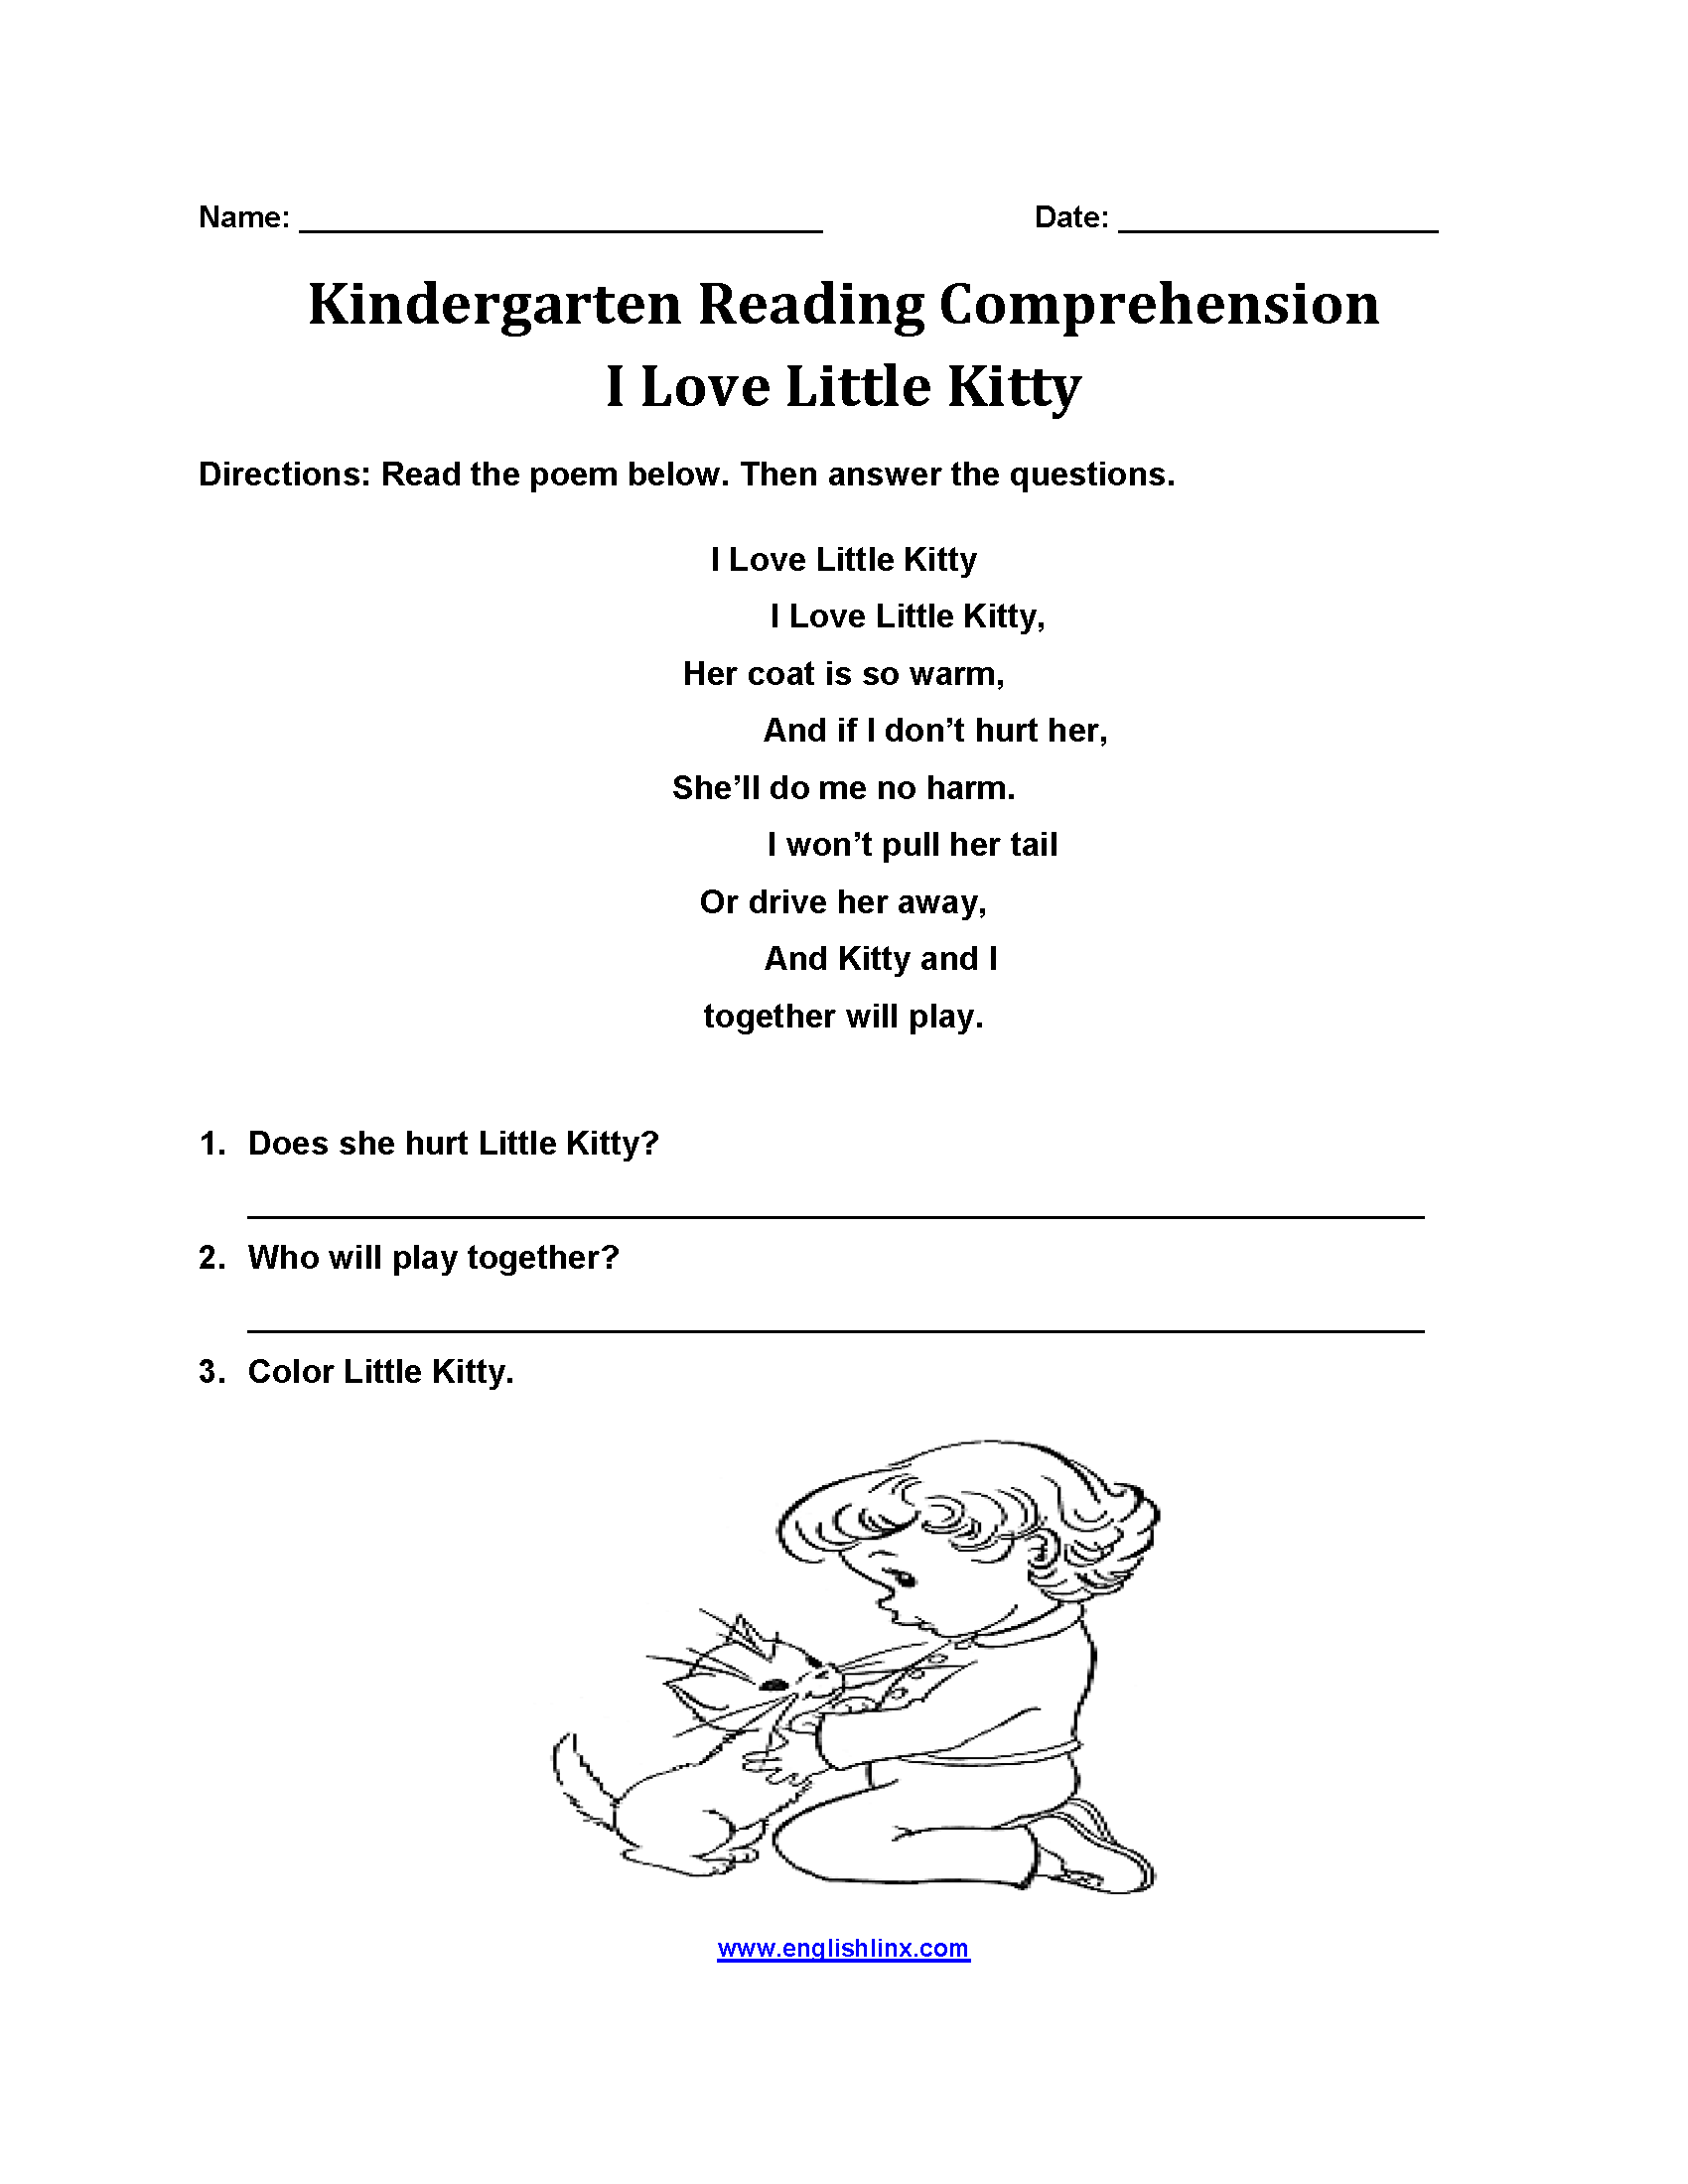 I Love Little Kitty Kindergarten Reading Comprehension Worksheets